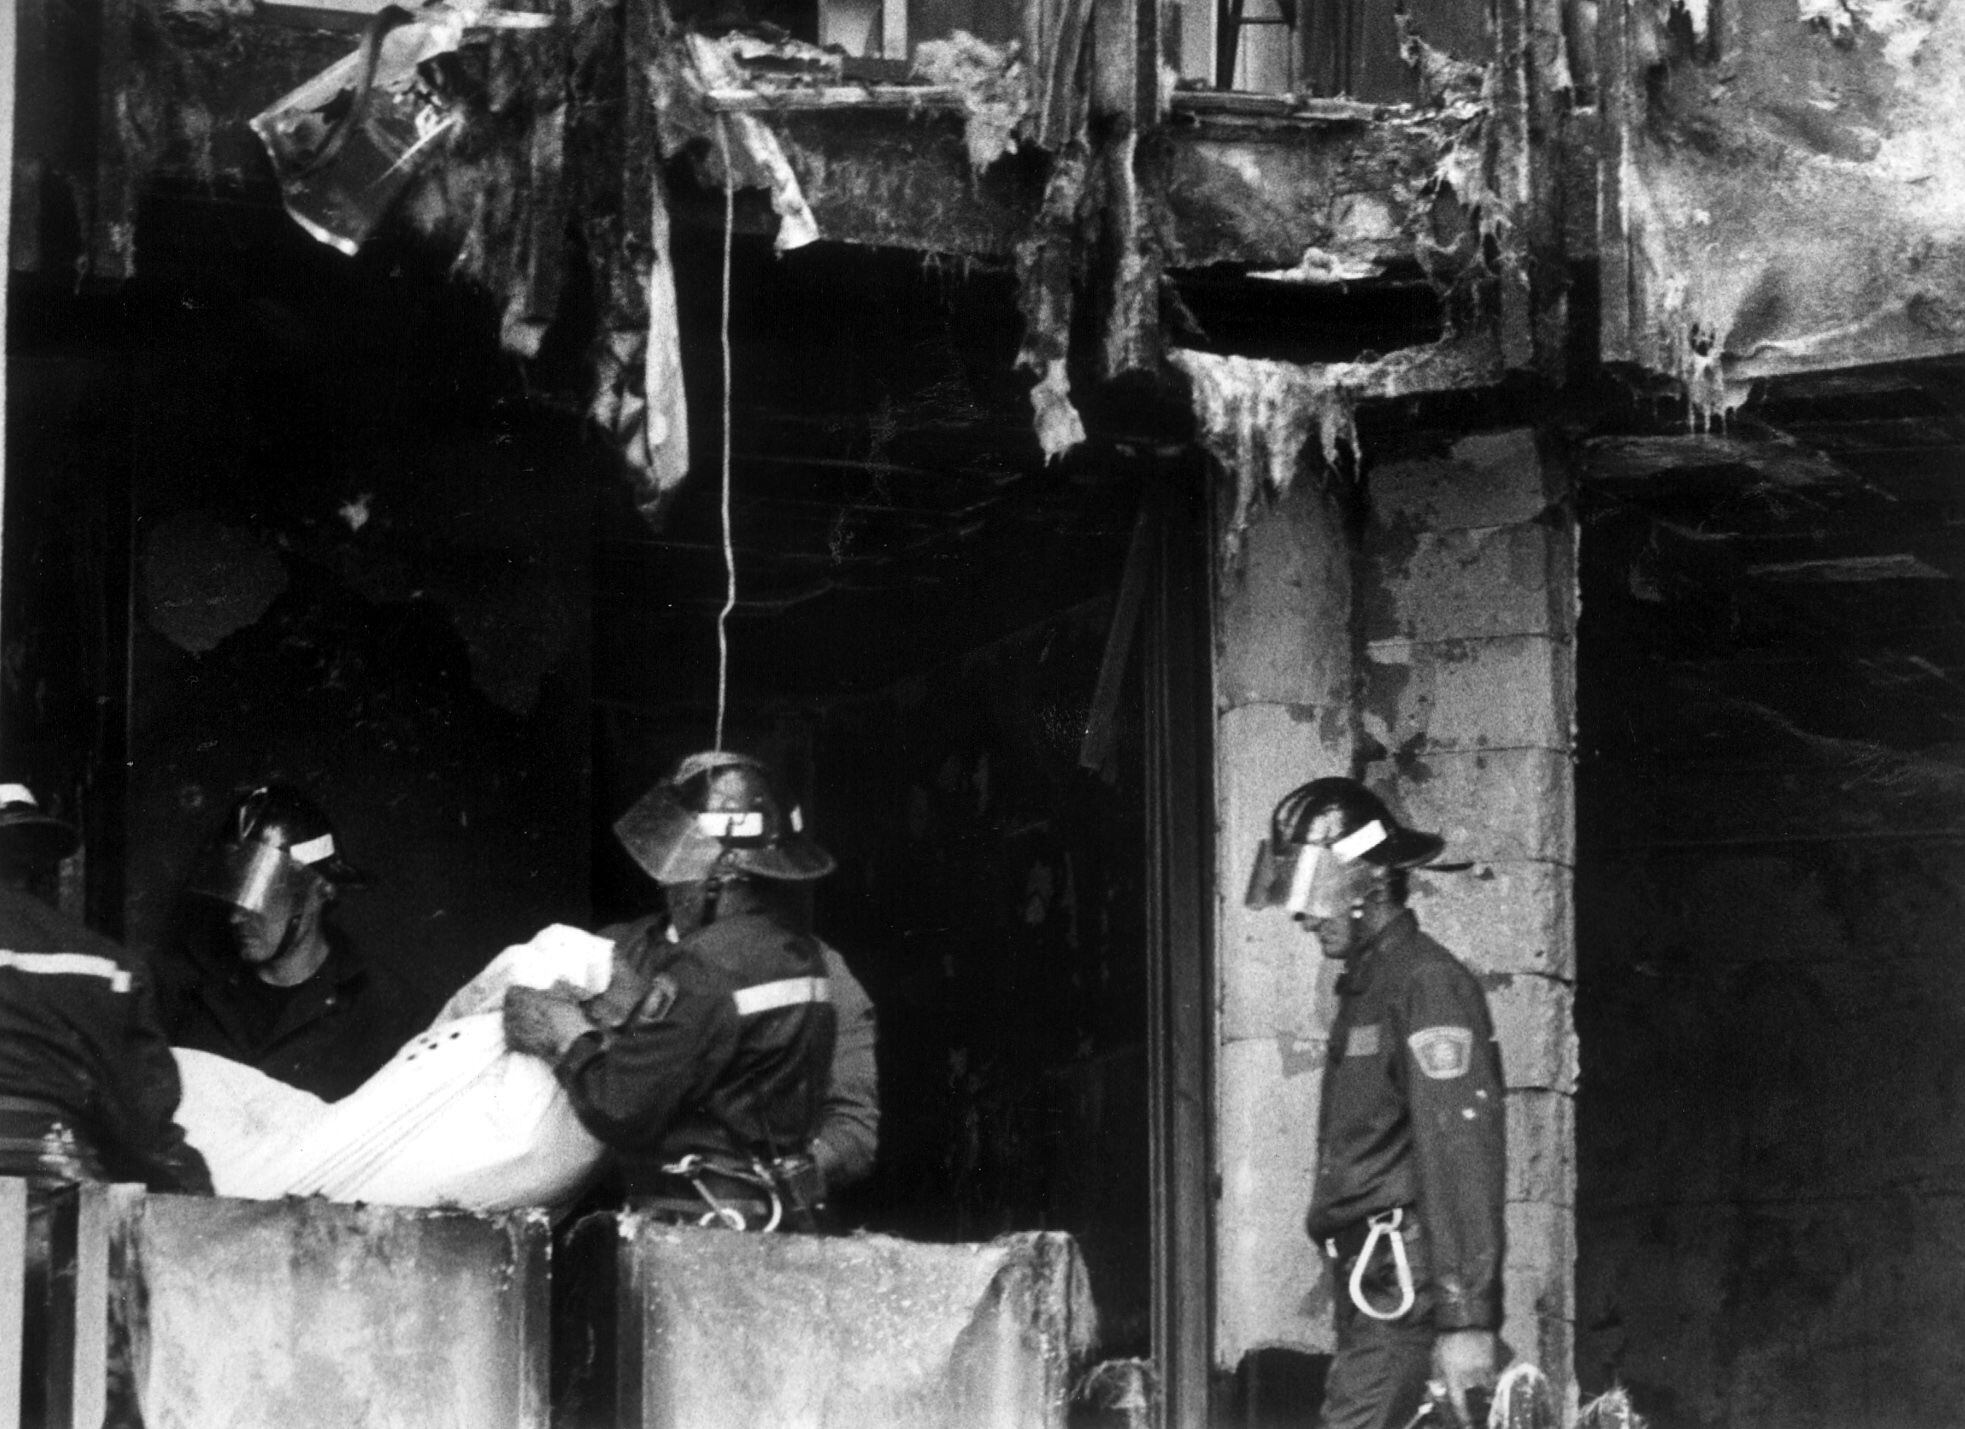 Los bomberos trasladaban uno de los cadáveres de las víctimas del incendio registrado en una vivienda de Móstoles (Madrid), cuya fachada estaba recubierta de material inflamable, en el que murieron 12 personas en 1992.